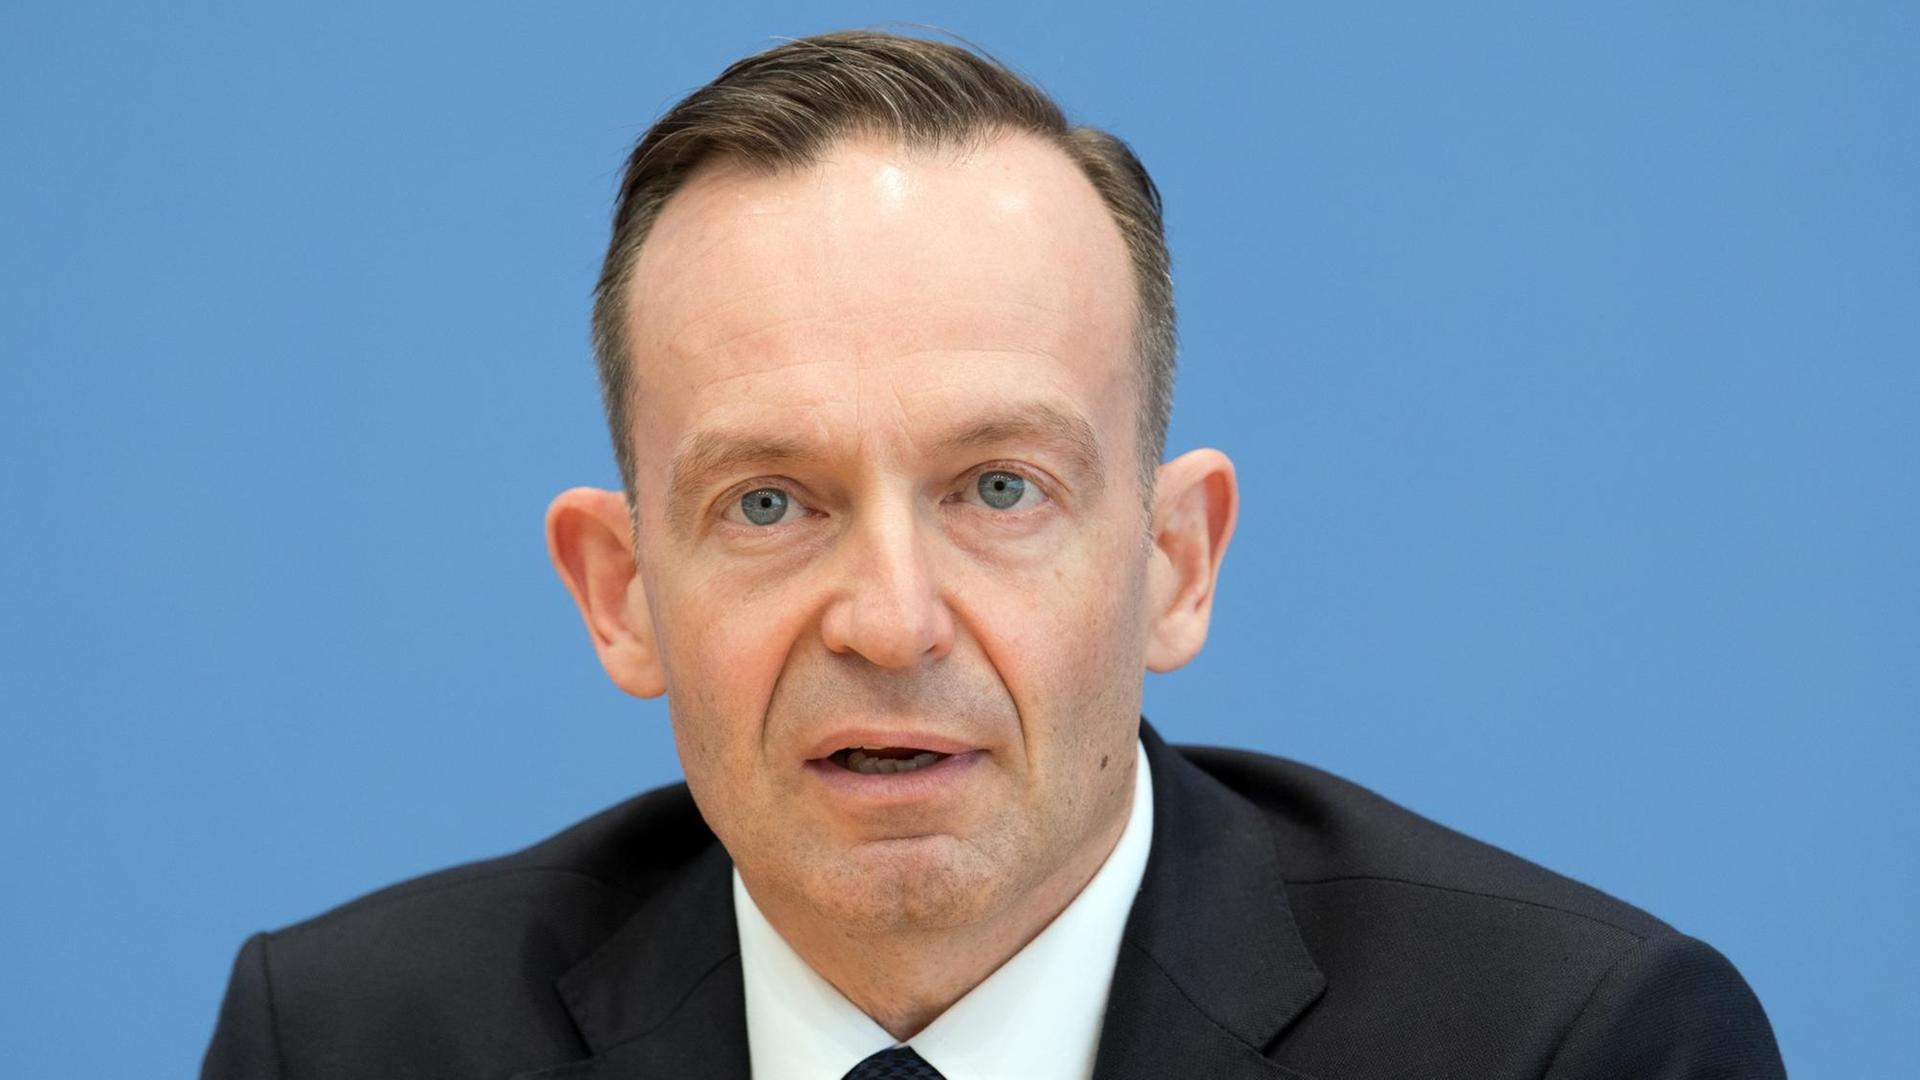 Das Bild zeigt den Wirtschaftsminister von Rheinland-Pfalz, Volker Wissing (FDP), am 07.09.2017 in Berlin.